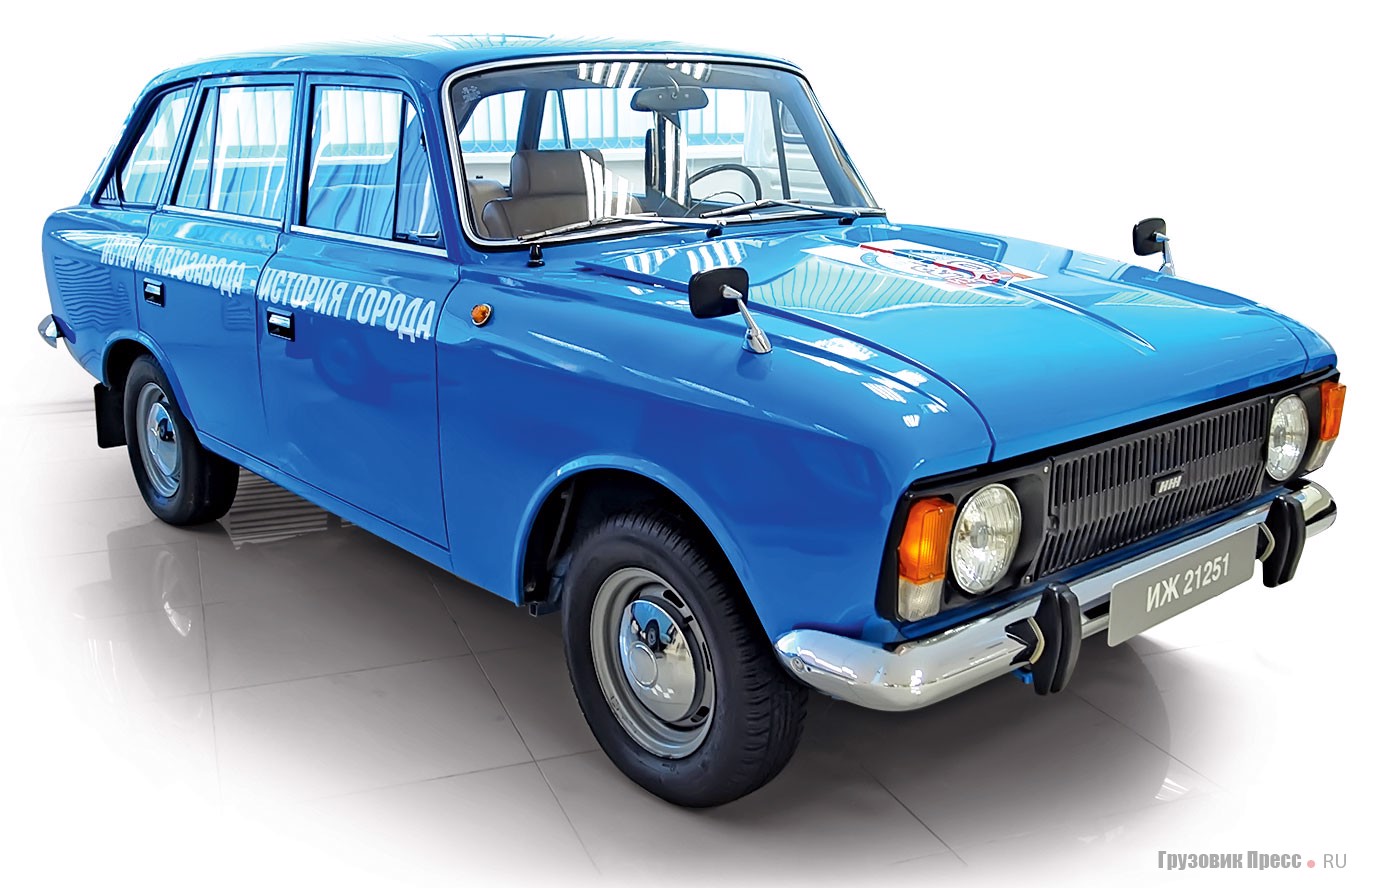 Первый советский автомобиль с пятидверным кузовом хэтчбек (на снимке поздняя модификация Иж-21251). Всего за 1973–1997 гг. изготовлено 414 187 ижевских «Комби»